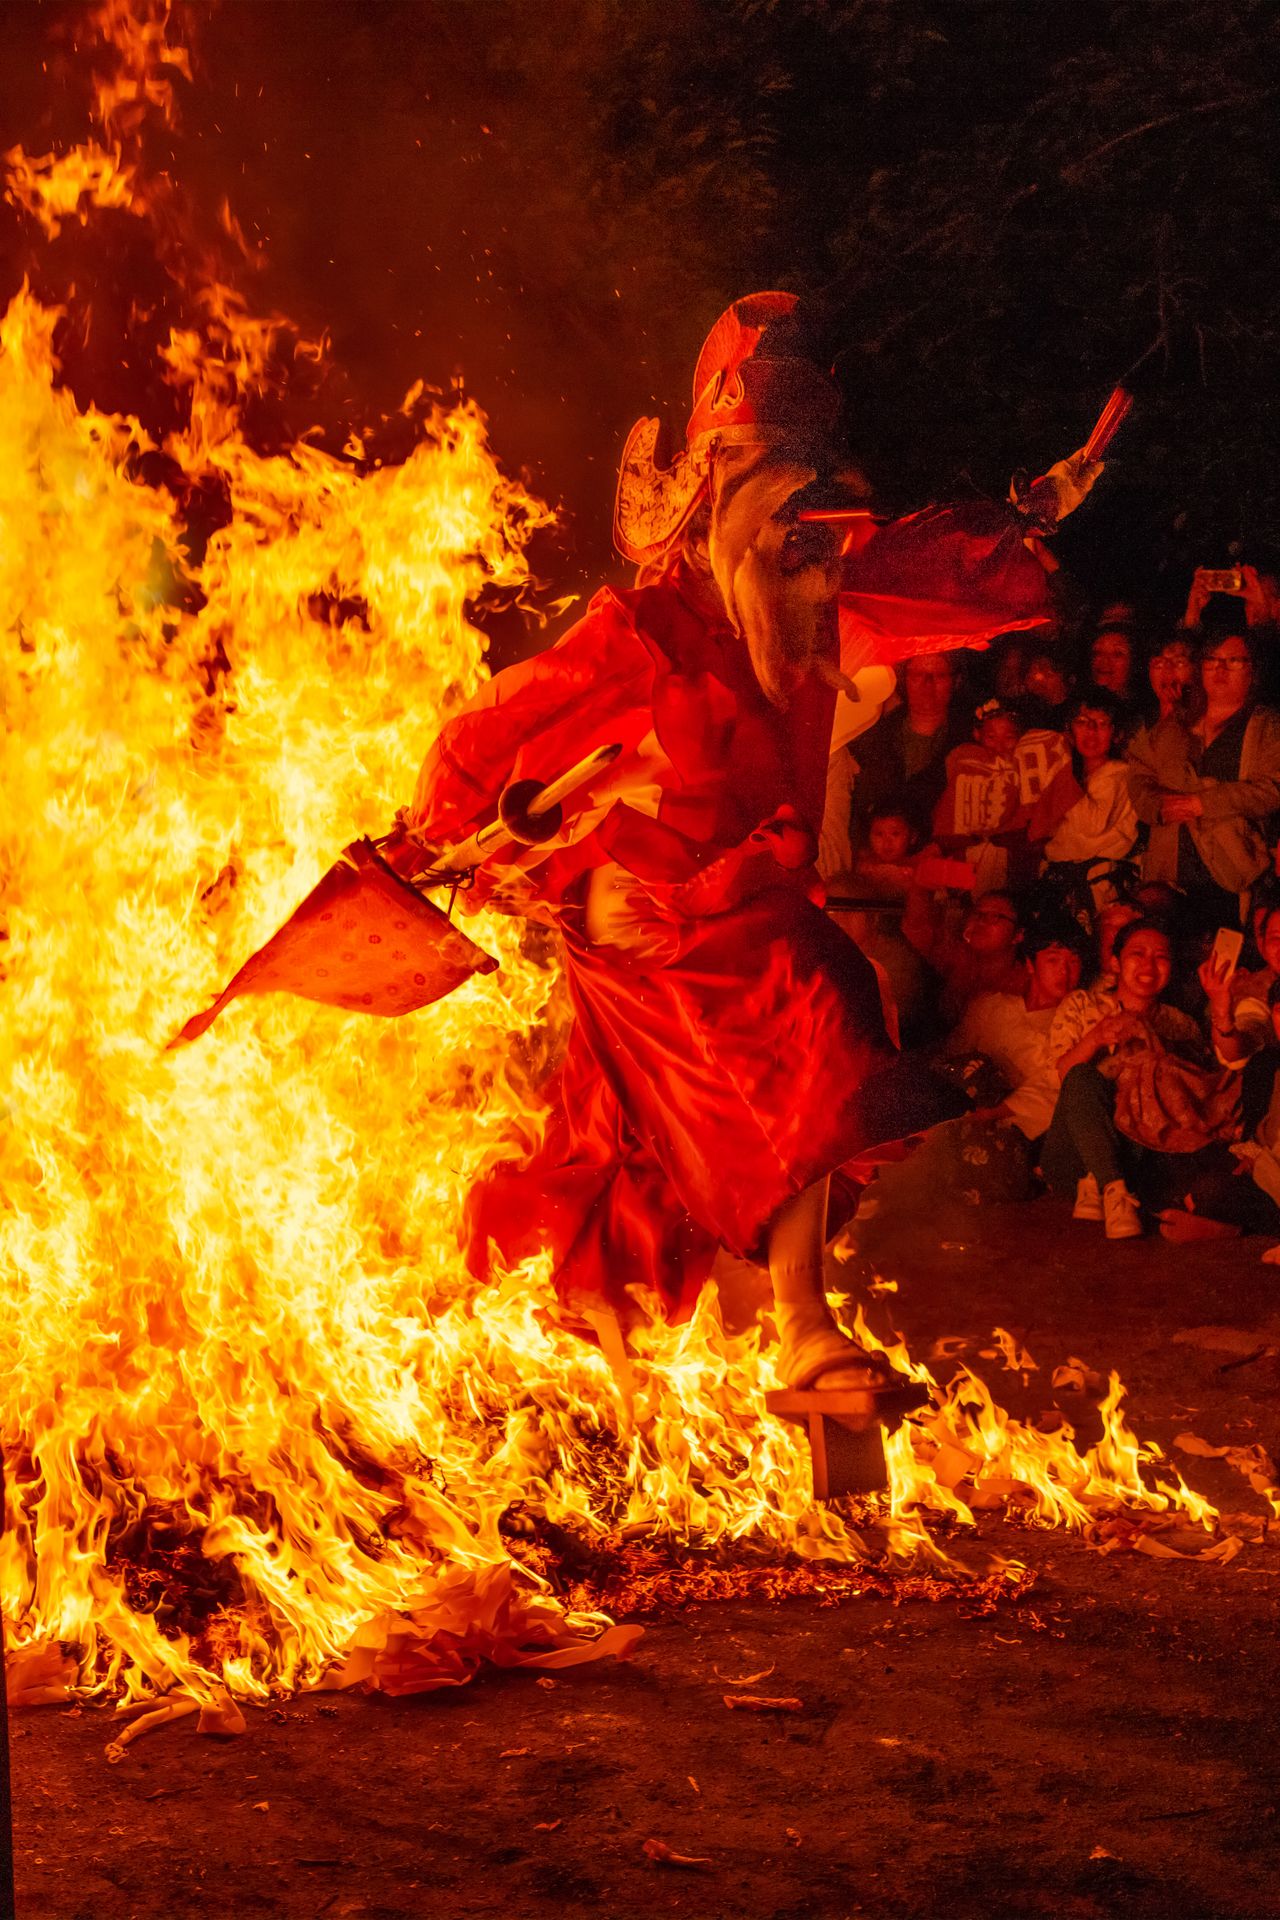 Parece que un tengu surja de entre las llamas. Acudí al festival para captar con mi cámara la impresionante escena que había visto en redes sociales.